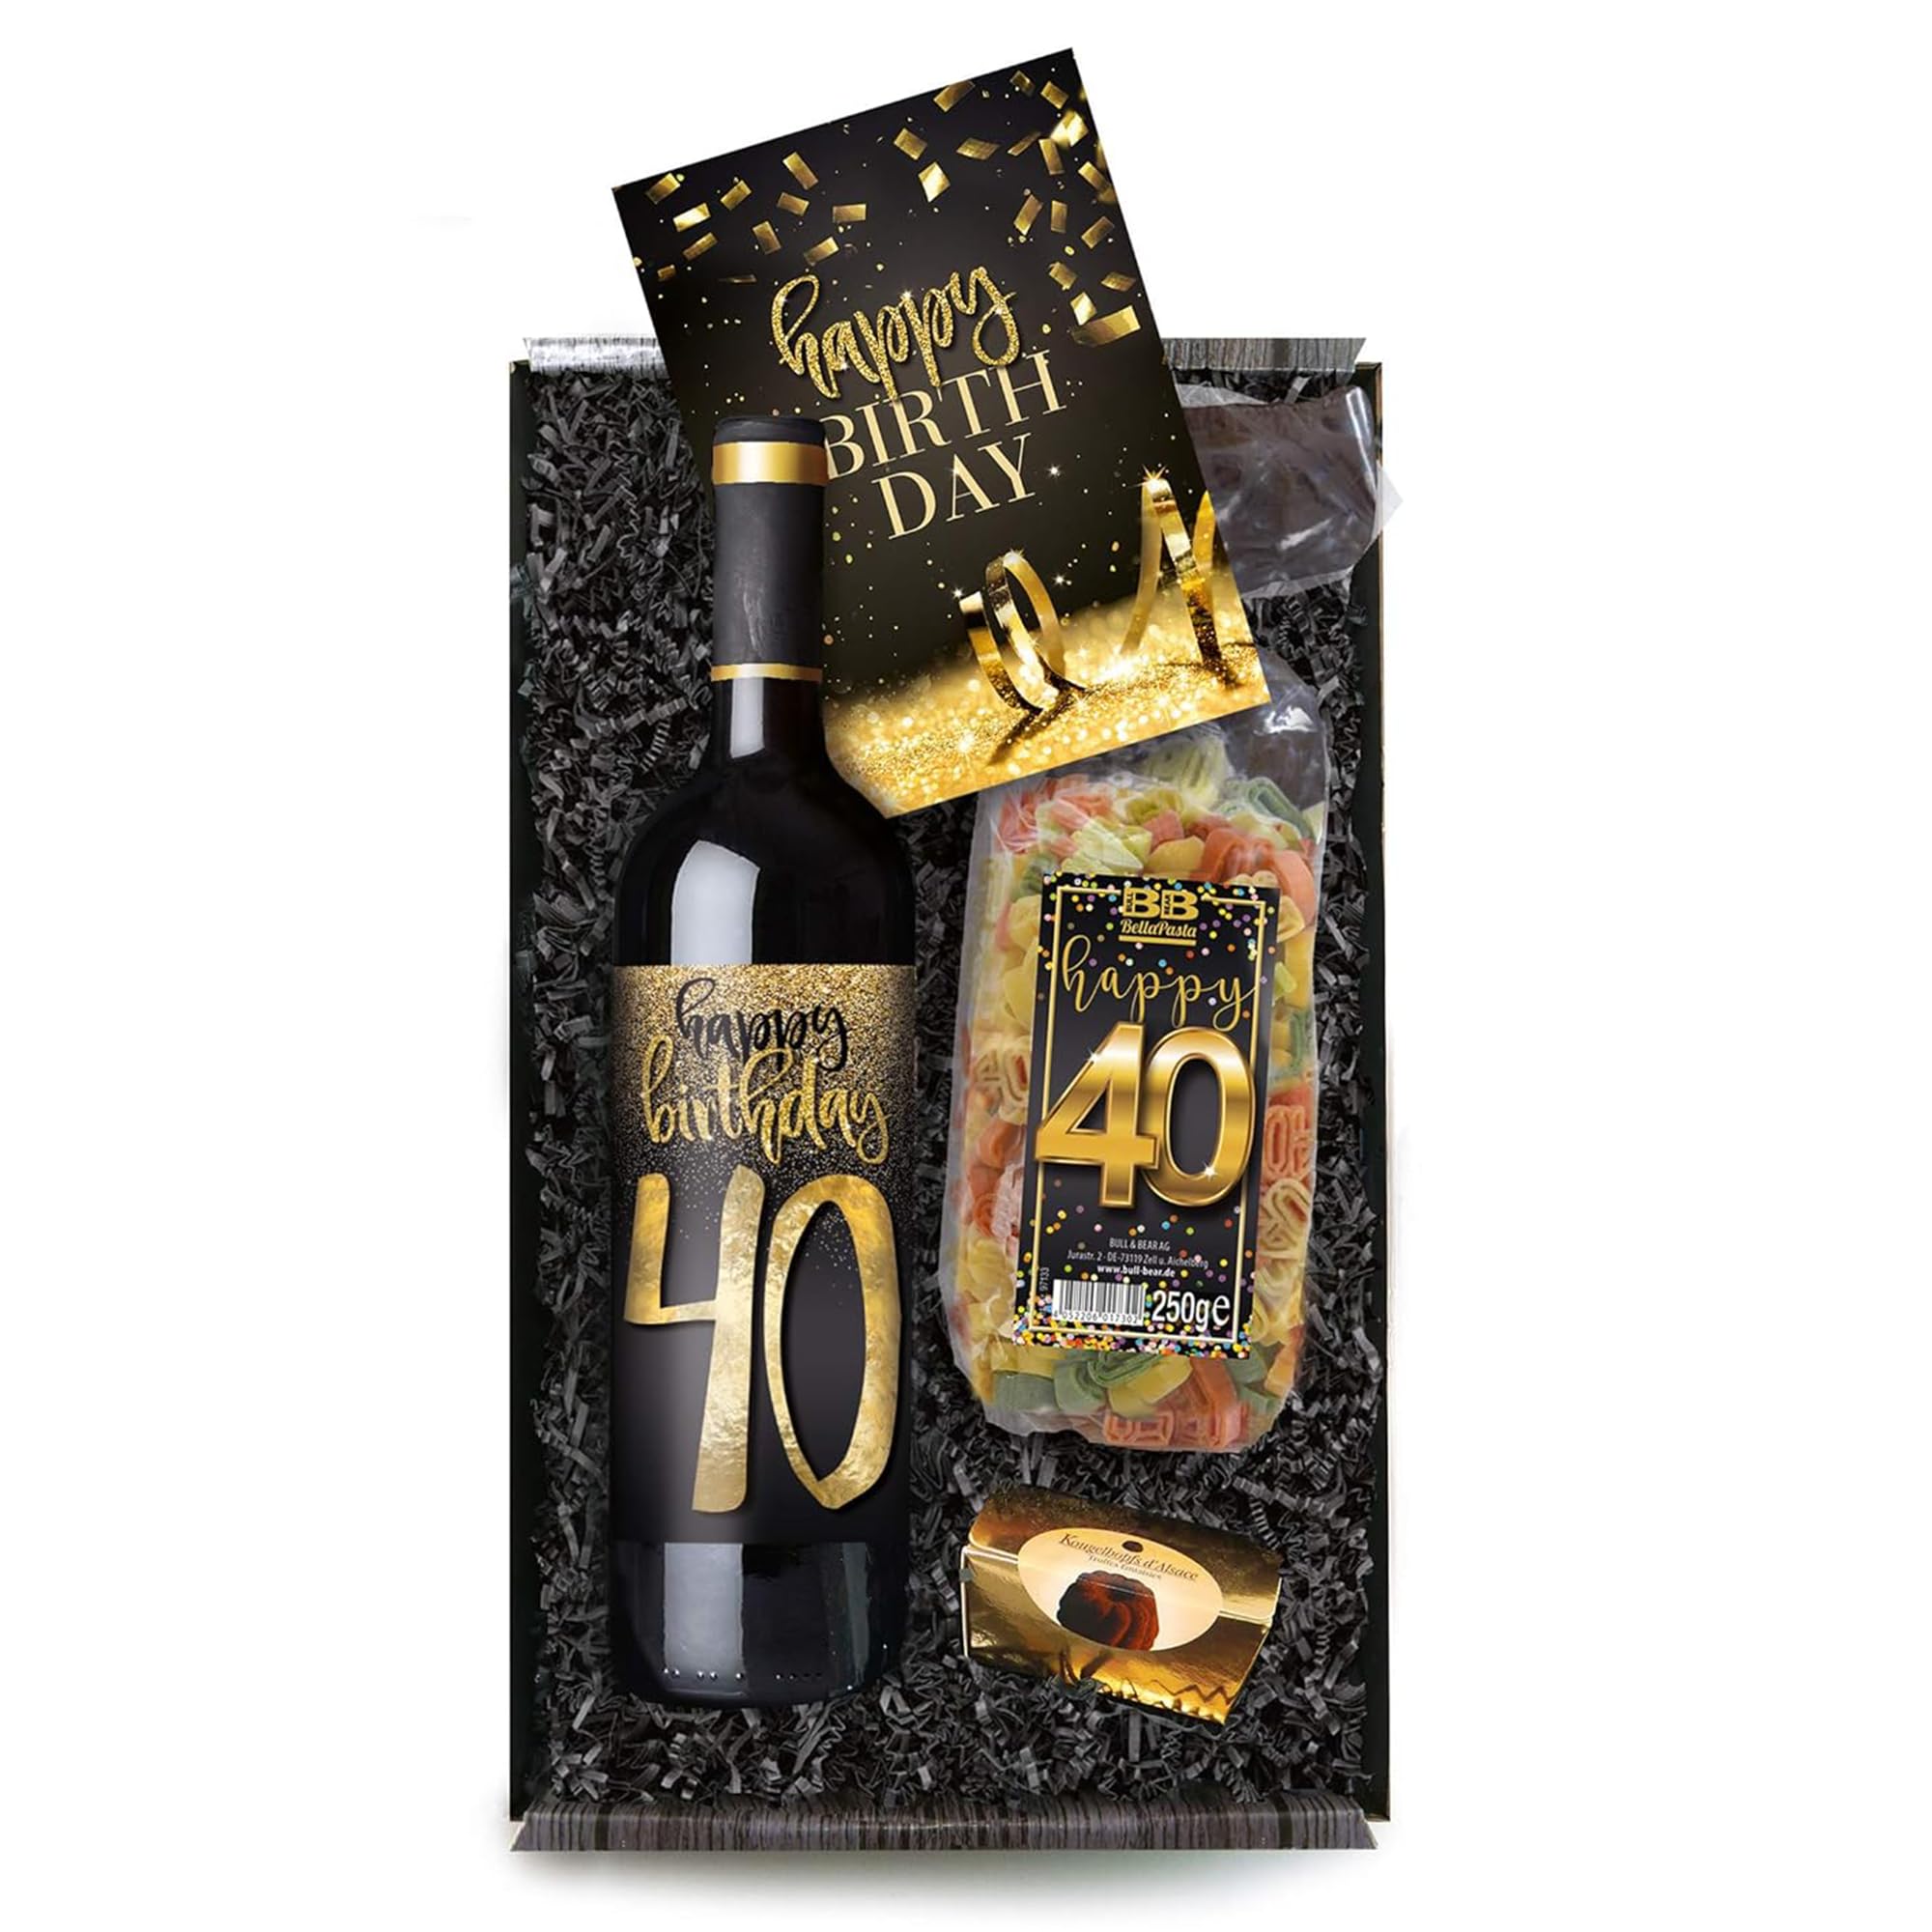 Bull & Bear Geschenkbox "Happy Birthday 40", Set mit Rotwein und Geburtstagskarte, Geschenk zum 40. Geburtstag